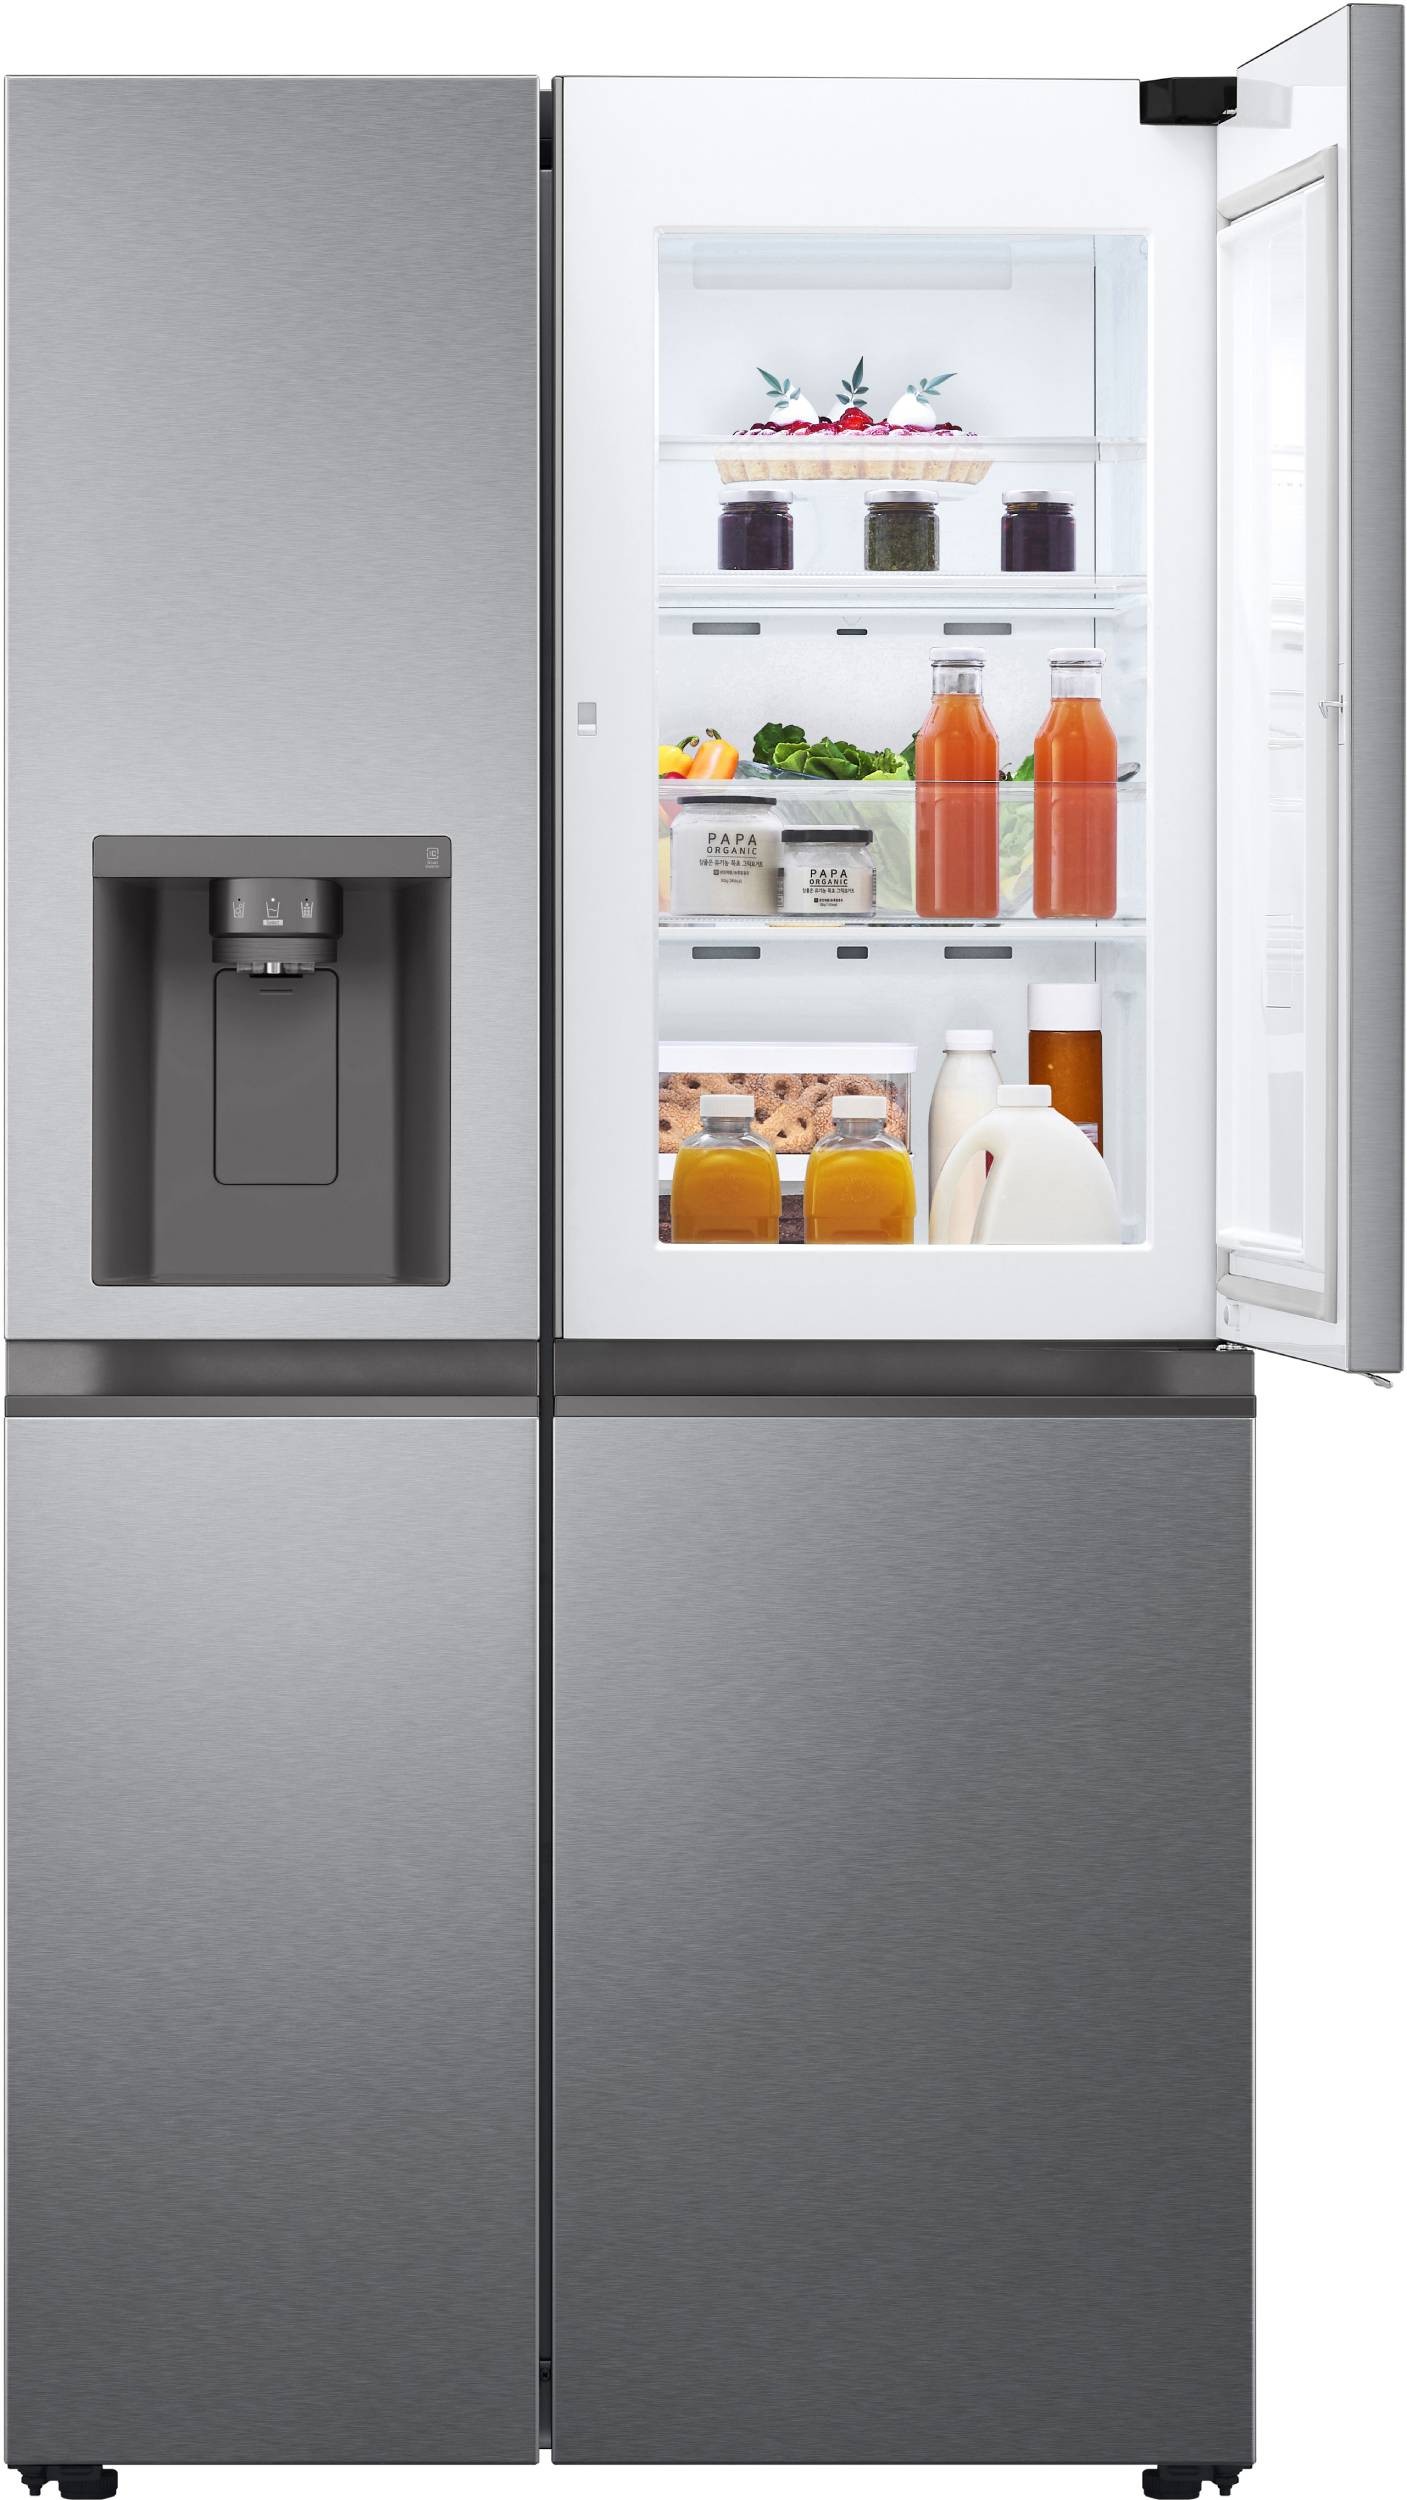 LG Réfrigérateur américain Froid Ventilé Total No Frost 635L Inox - GSJV51DSXE